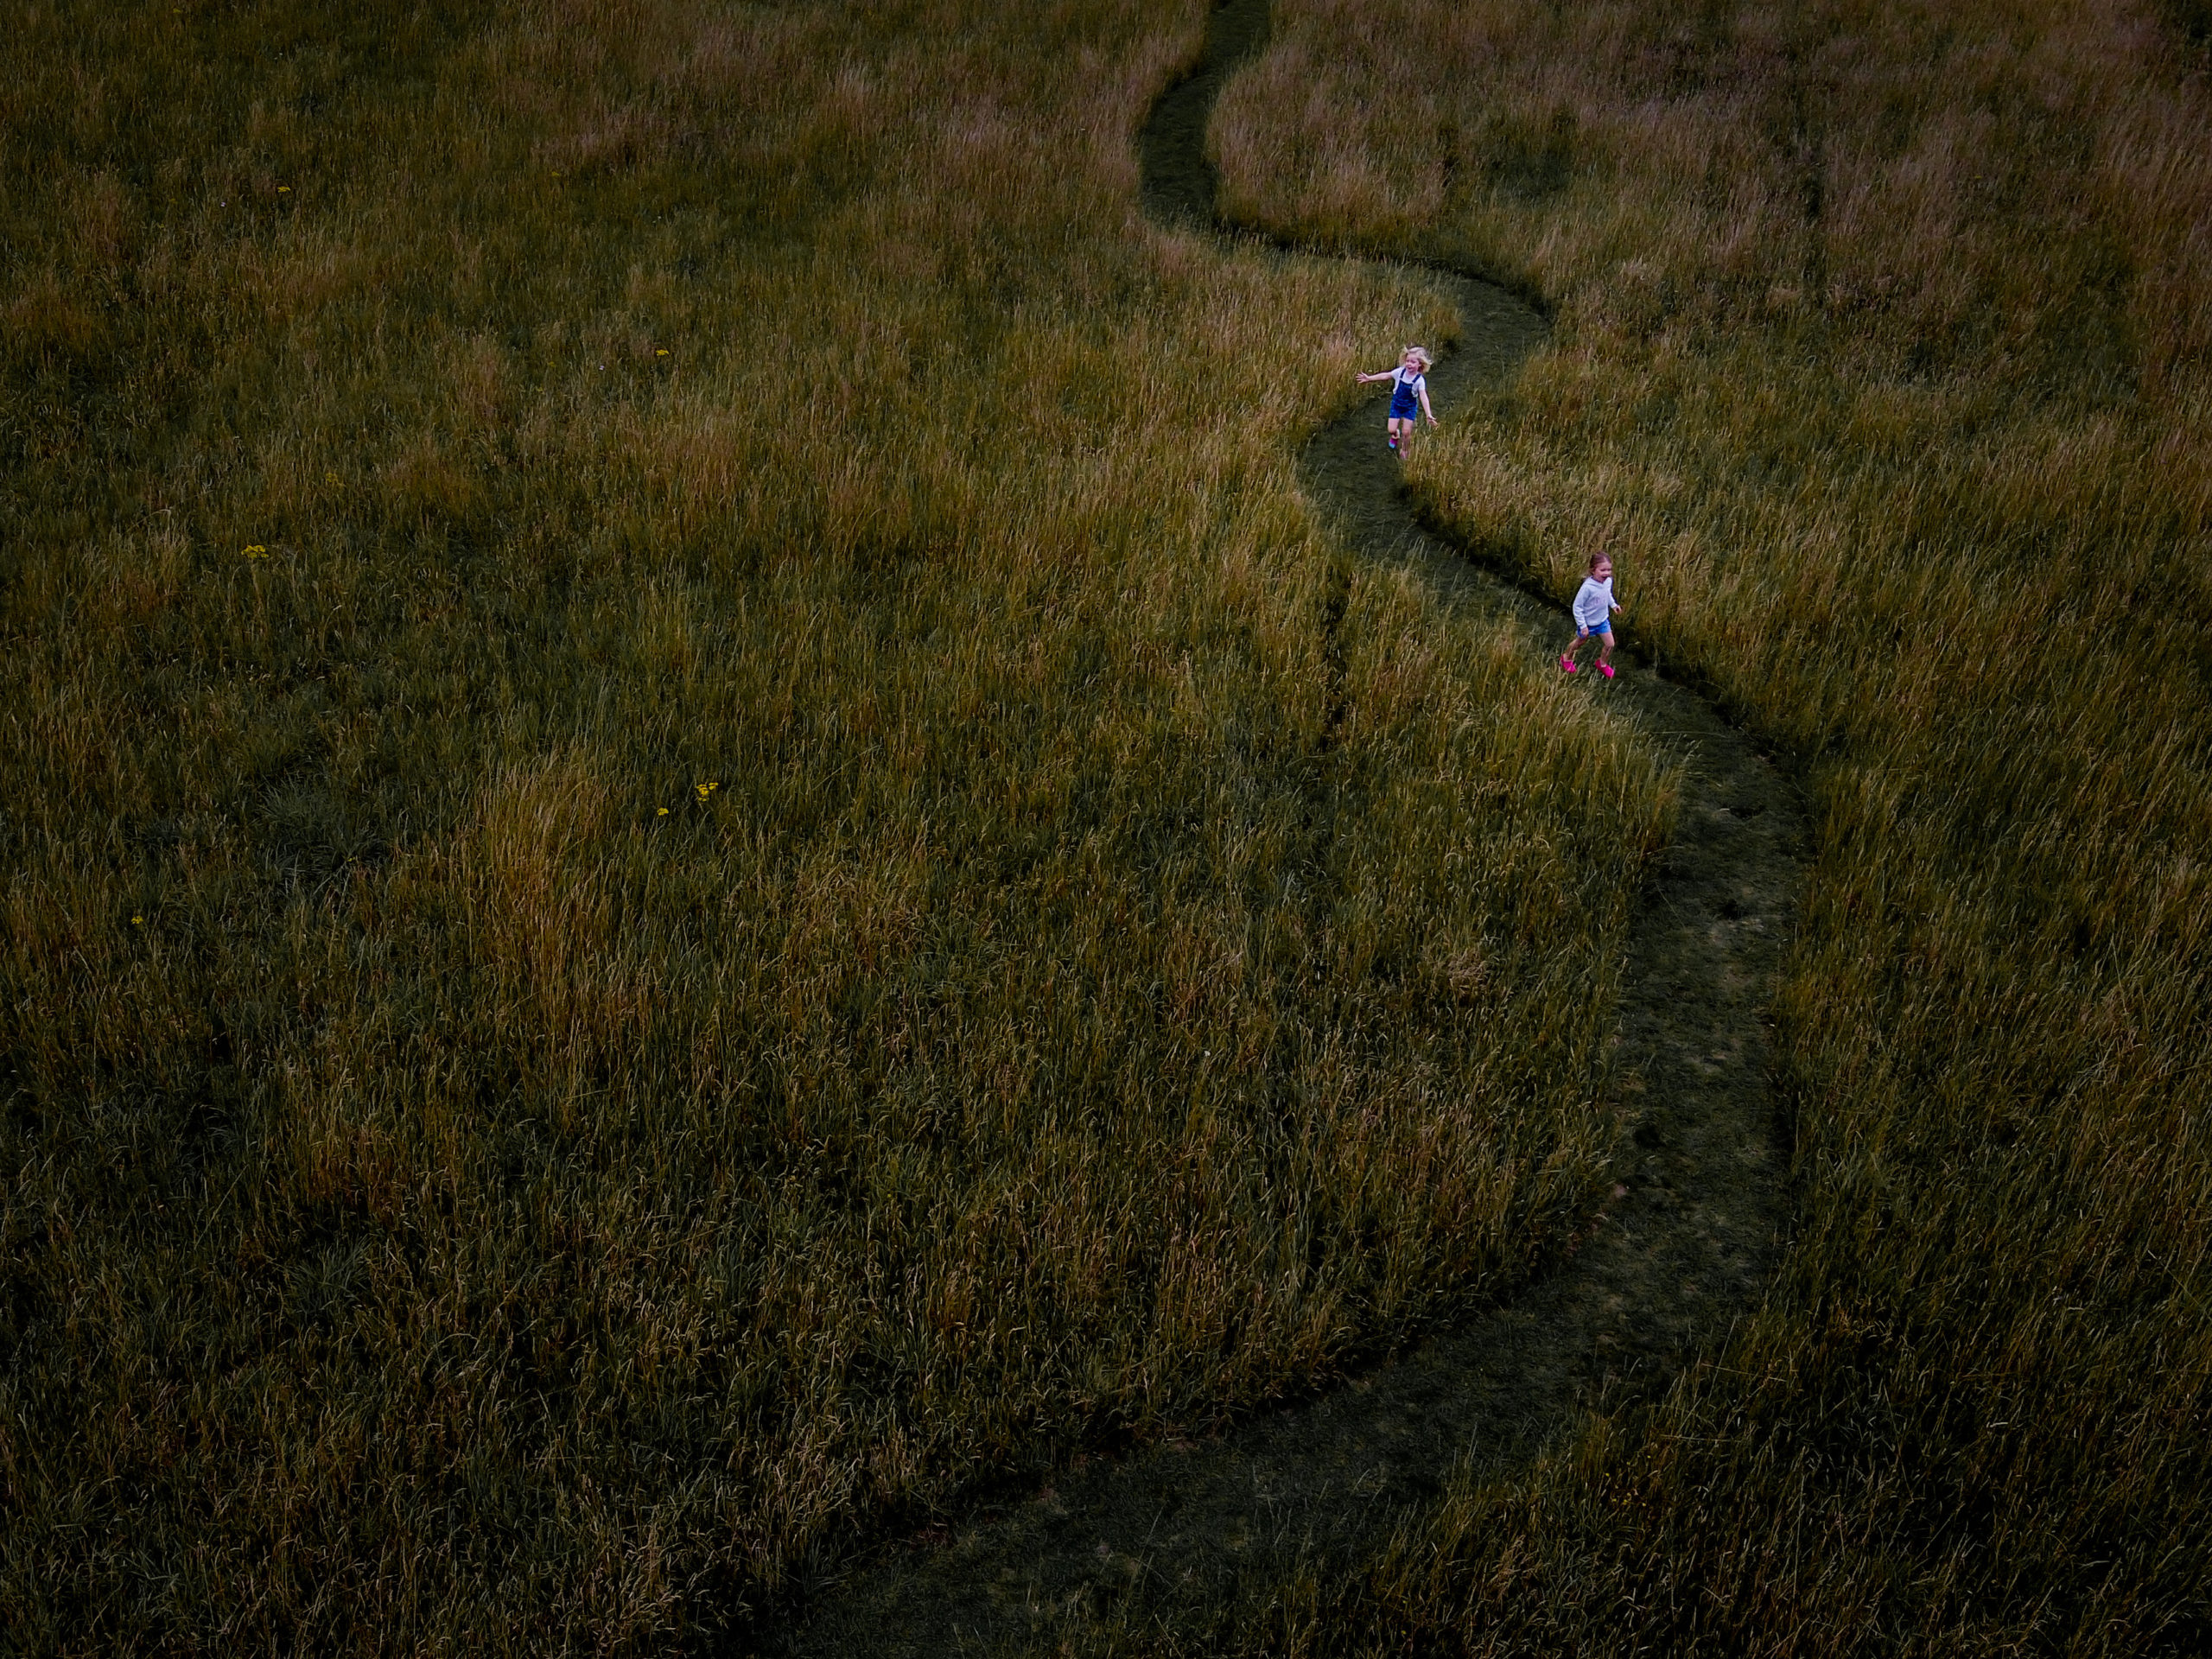 Children on grassy path